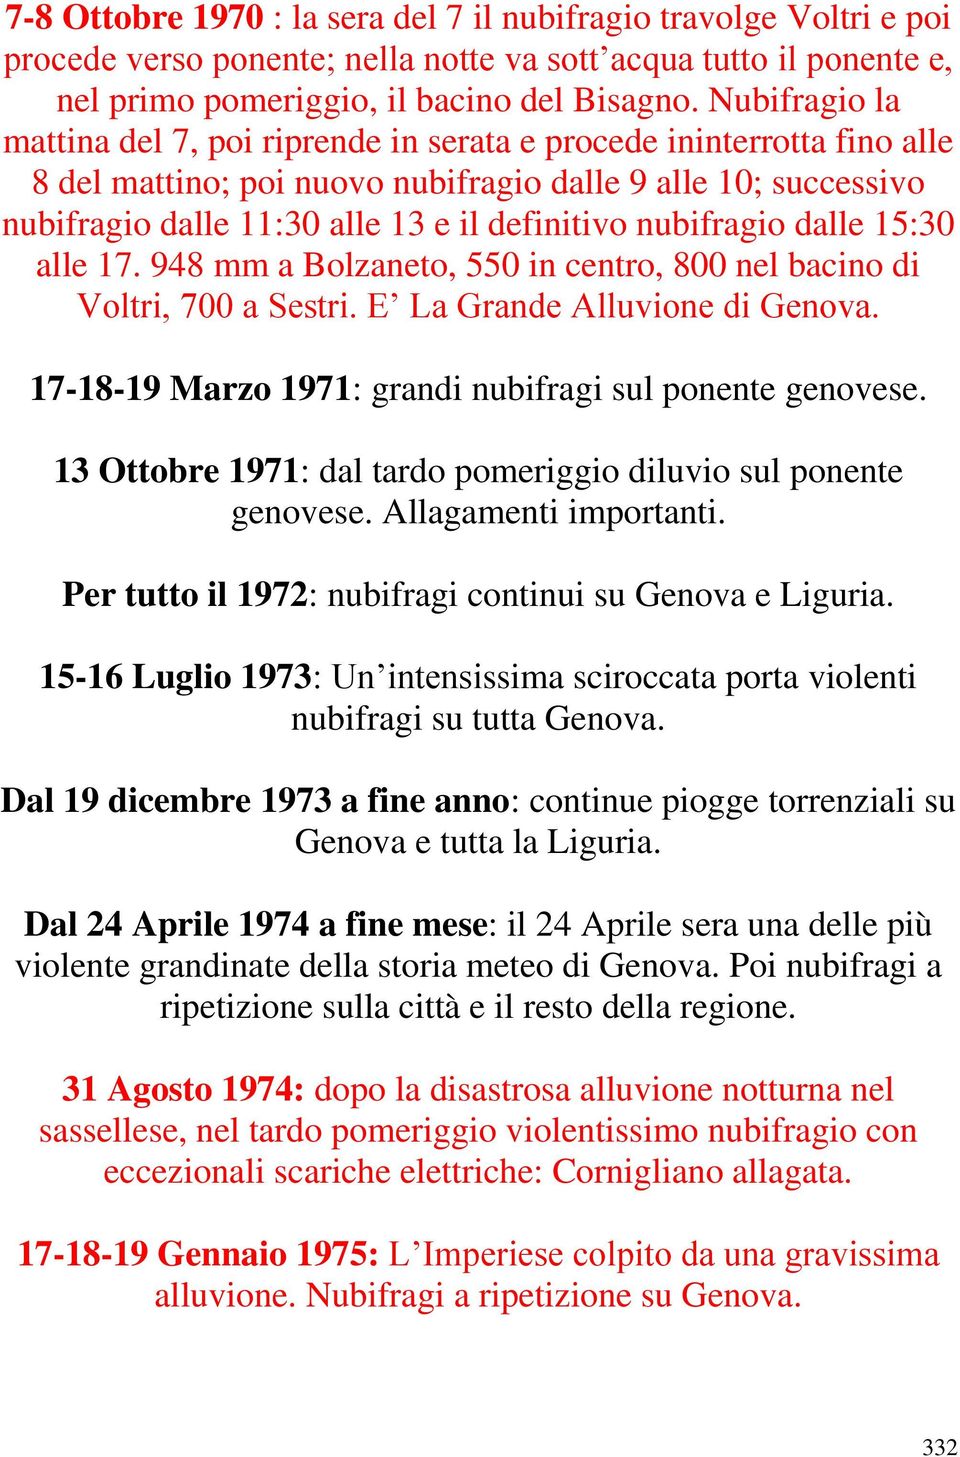 nubifragio dalle 15:30 alle 17. 948 mm a Bolzaneto, 550 in centro, 800 nel bacino di Voltri, 700 a Sestri. E La Grande Alluvione di Genova. 17-18-19 Marzo 1971: grandi nubifragi sul ponente genovese.